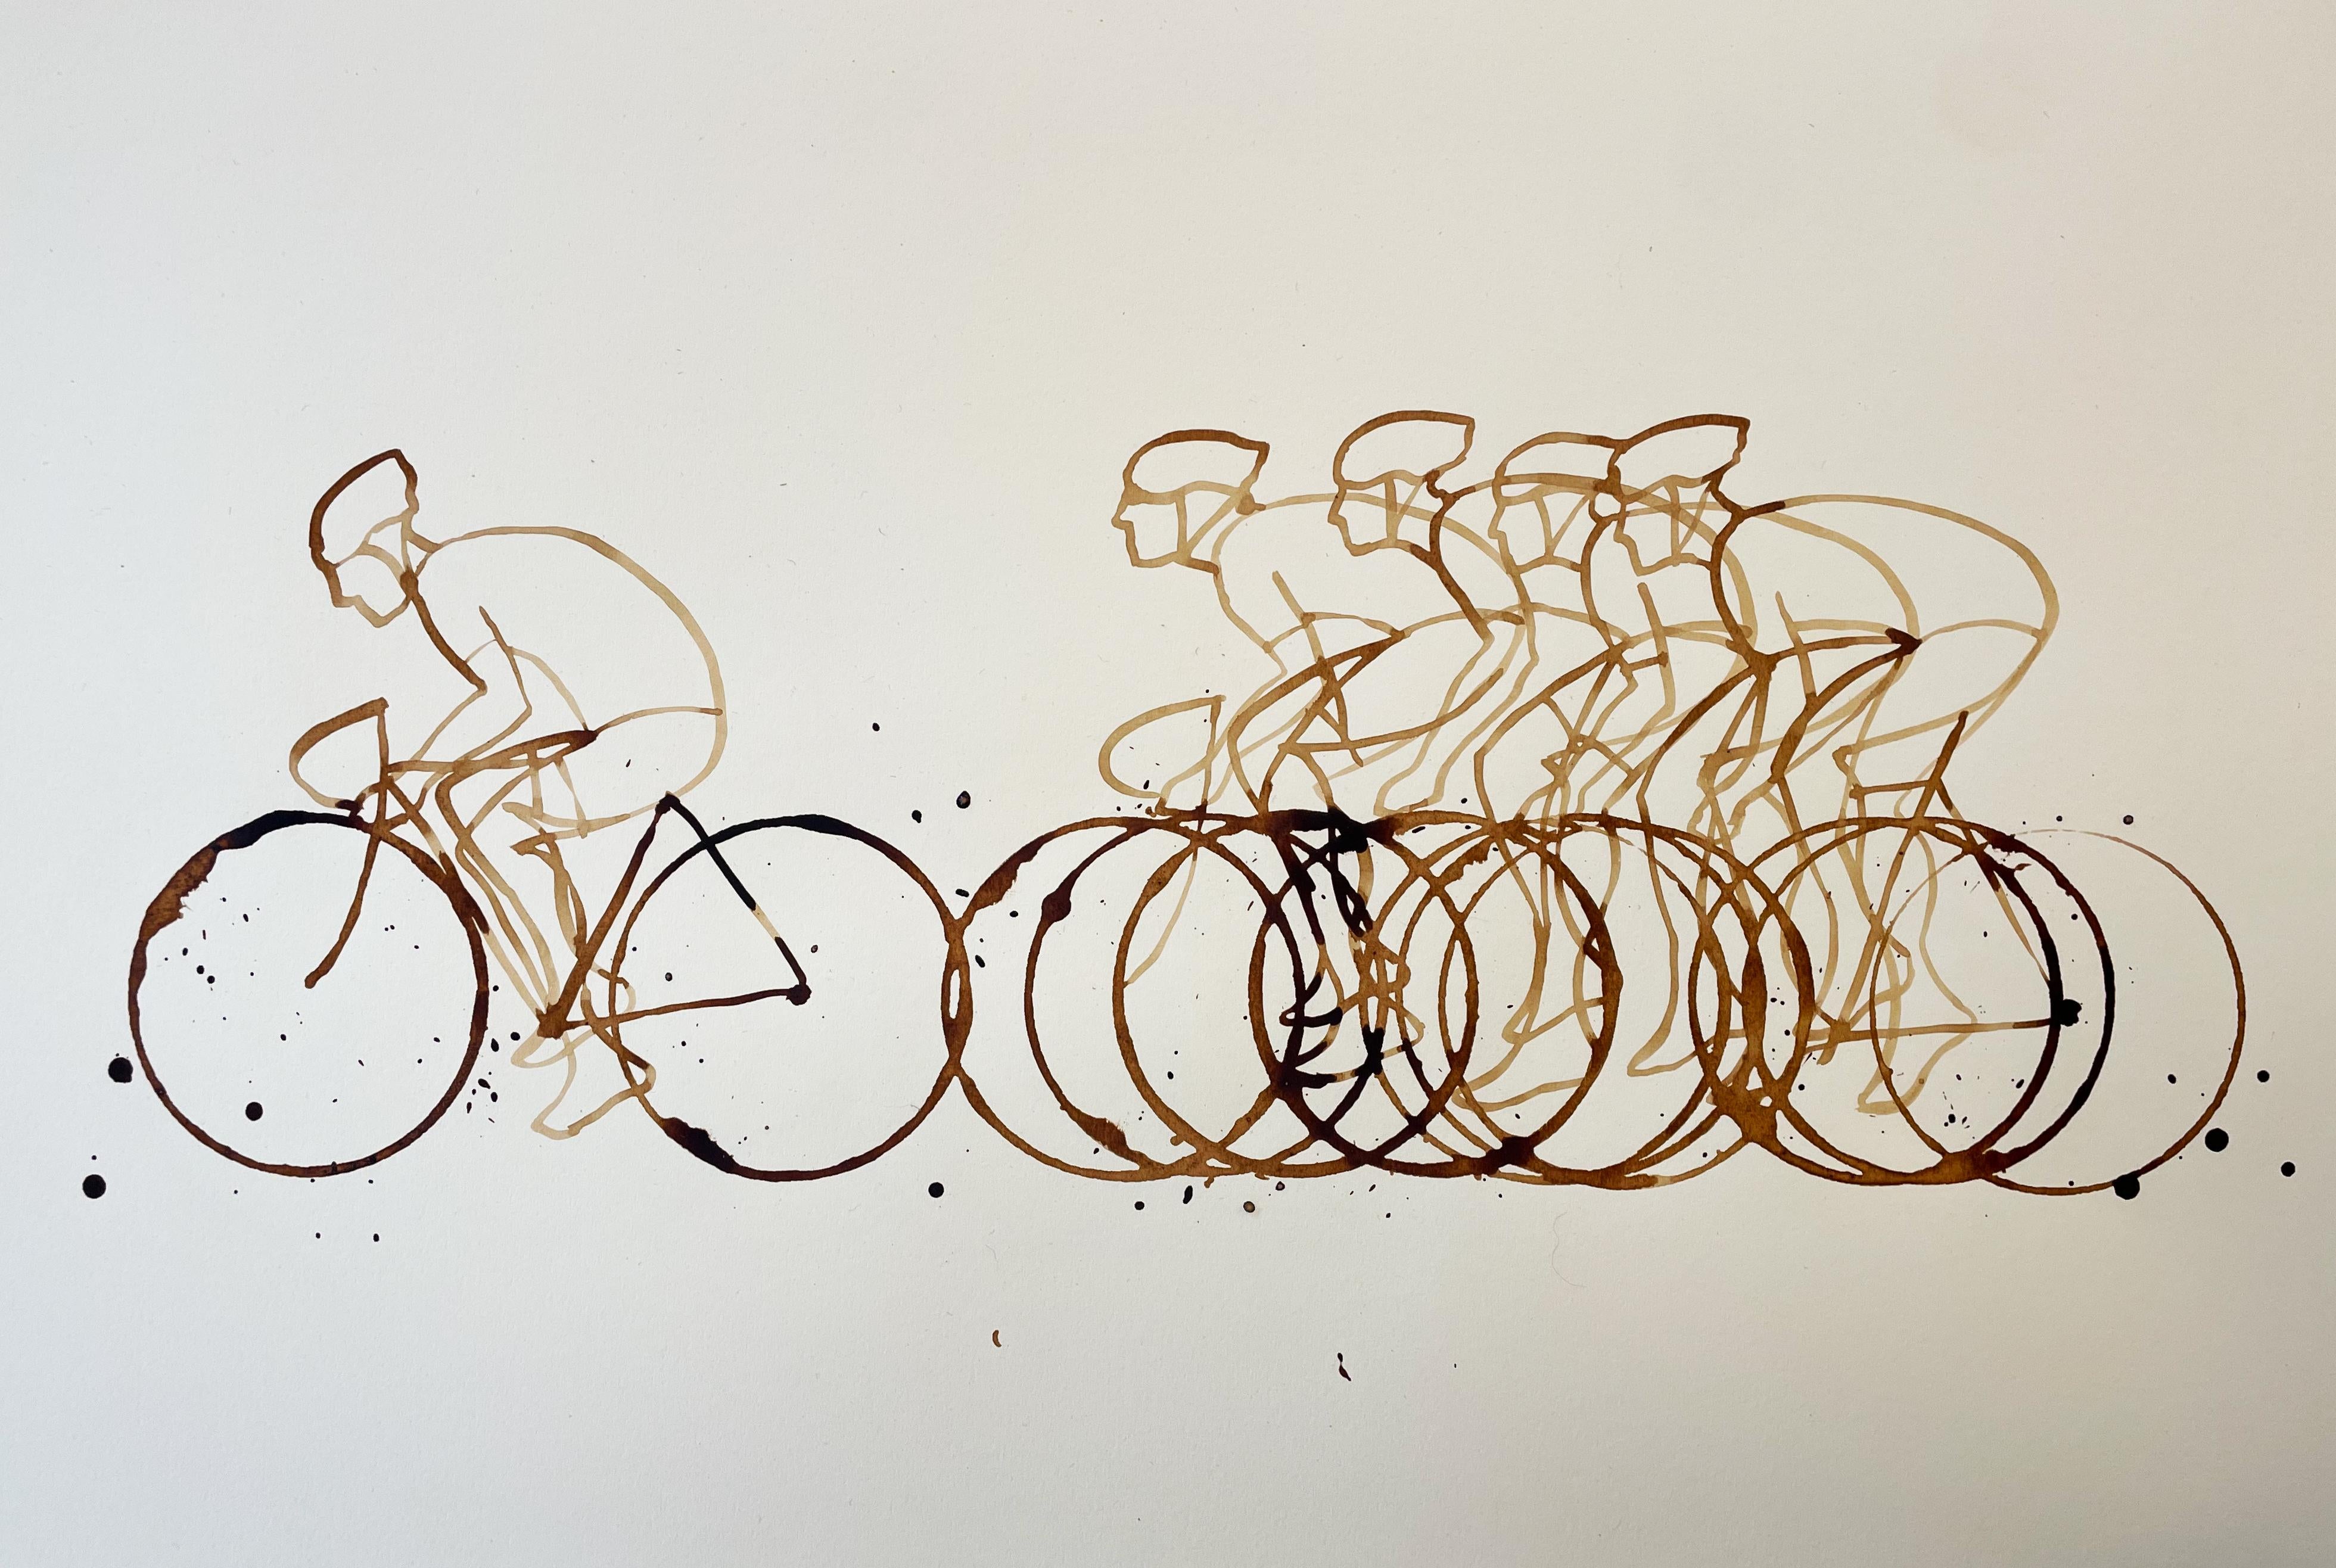 Couchtisch (CB01_nov23) Couchtisch auf Papier, Radfahrer, Sportkunst